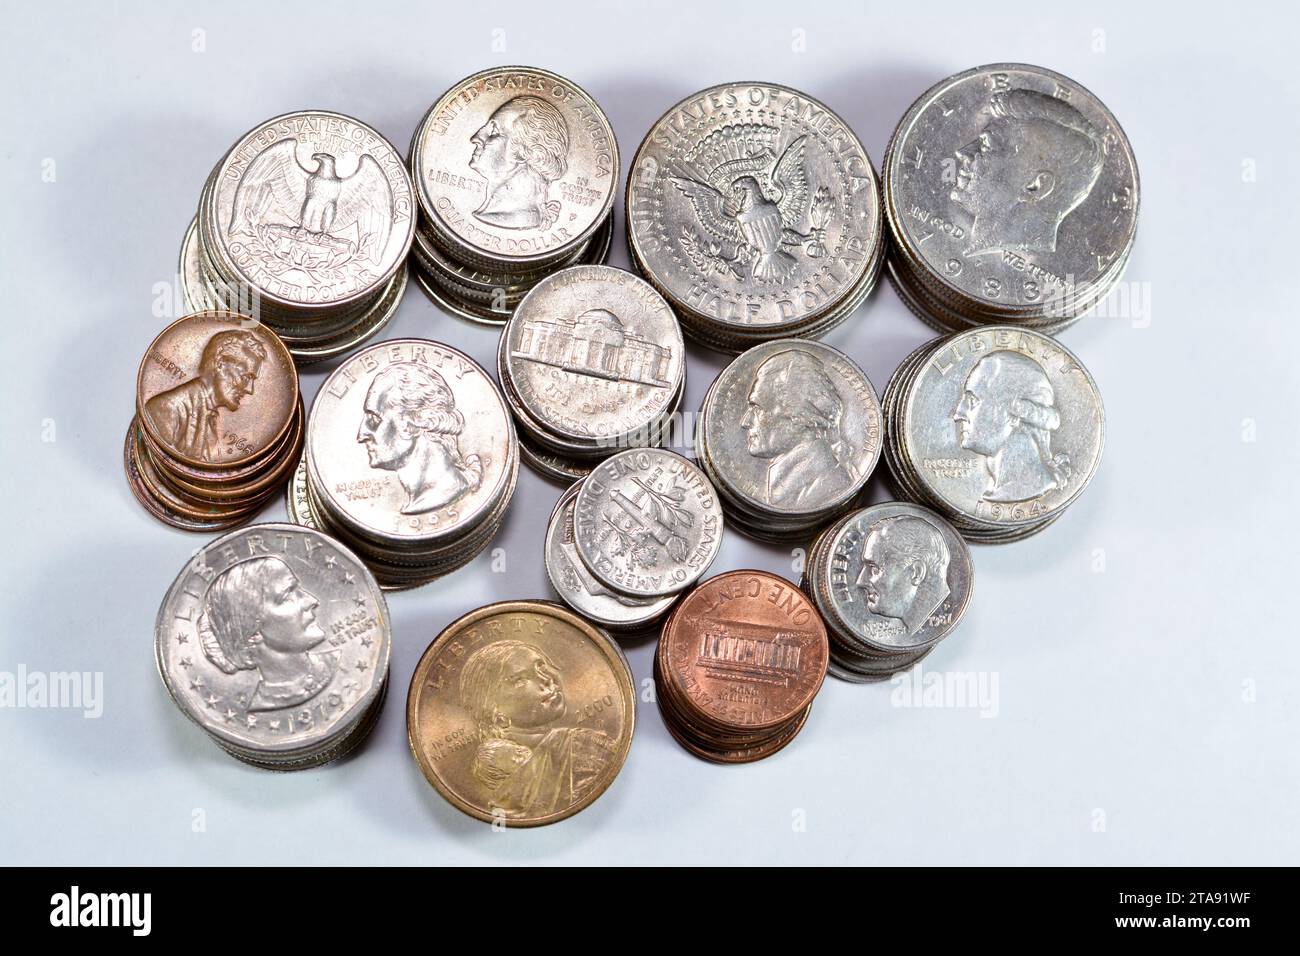 Mucchio di monete americane di tempi e valori diversi, 1 centesimo, dimes, quarti, mezzo dollaro, e dollari, vecchi Stati Uniti d'America in stile retrò d'epoca Foto Stock